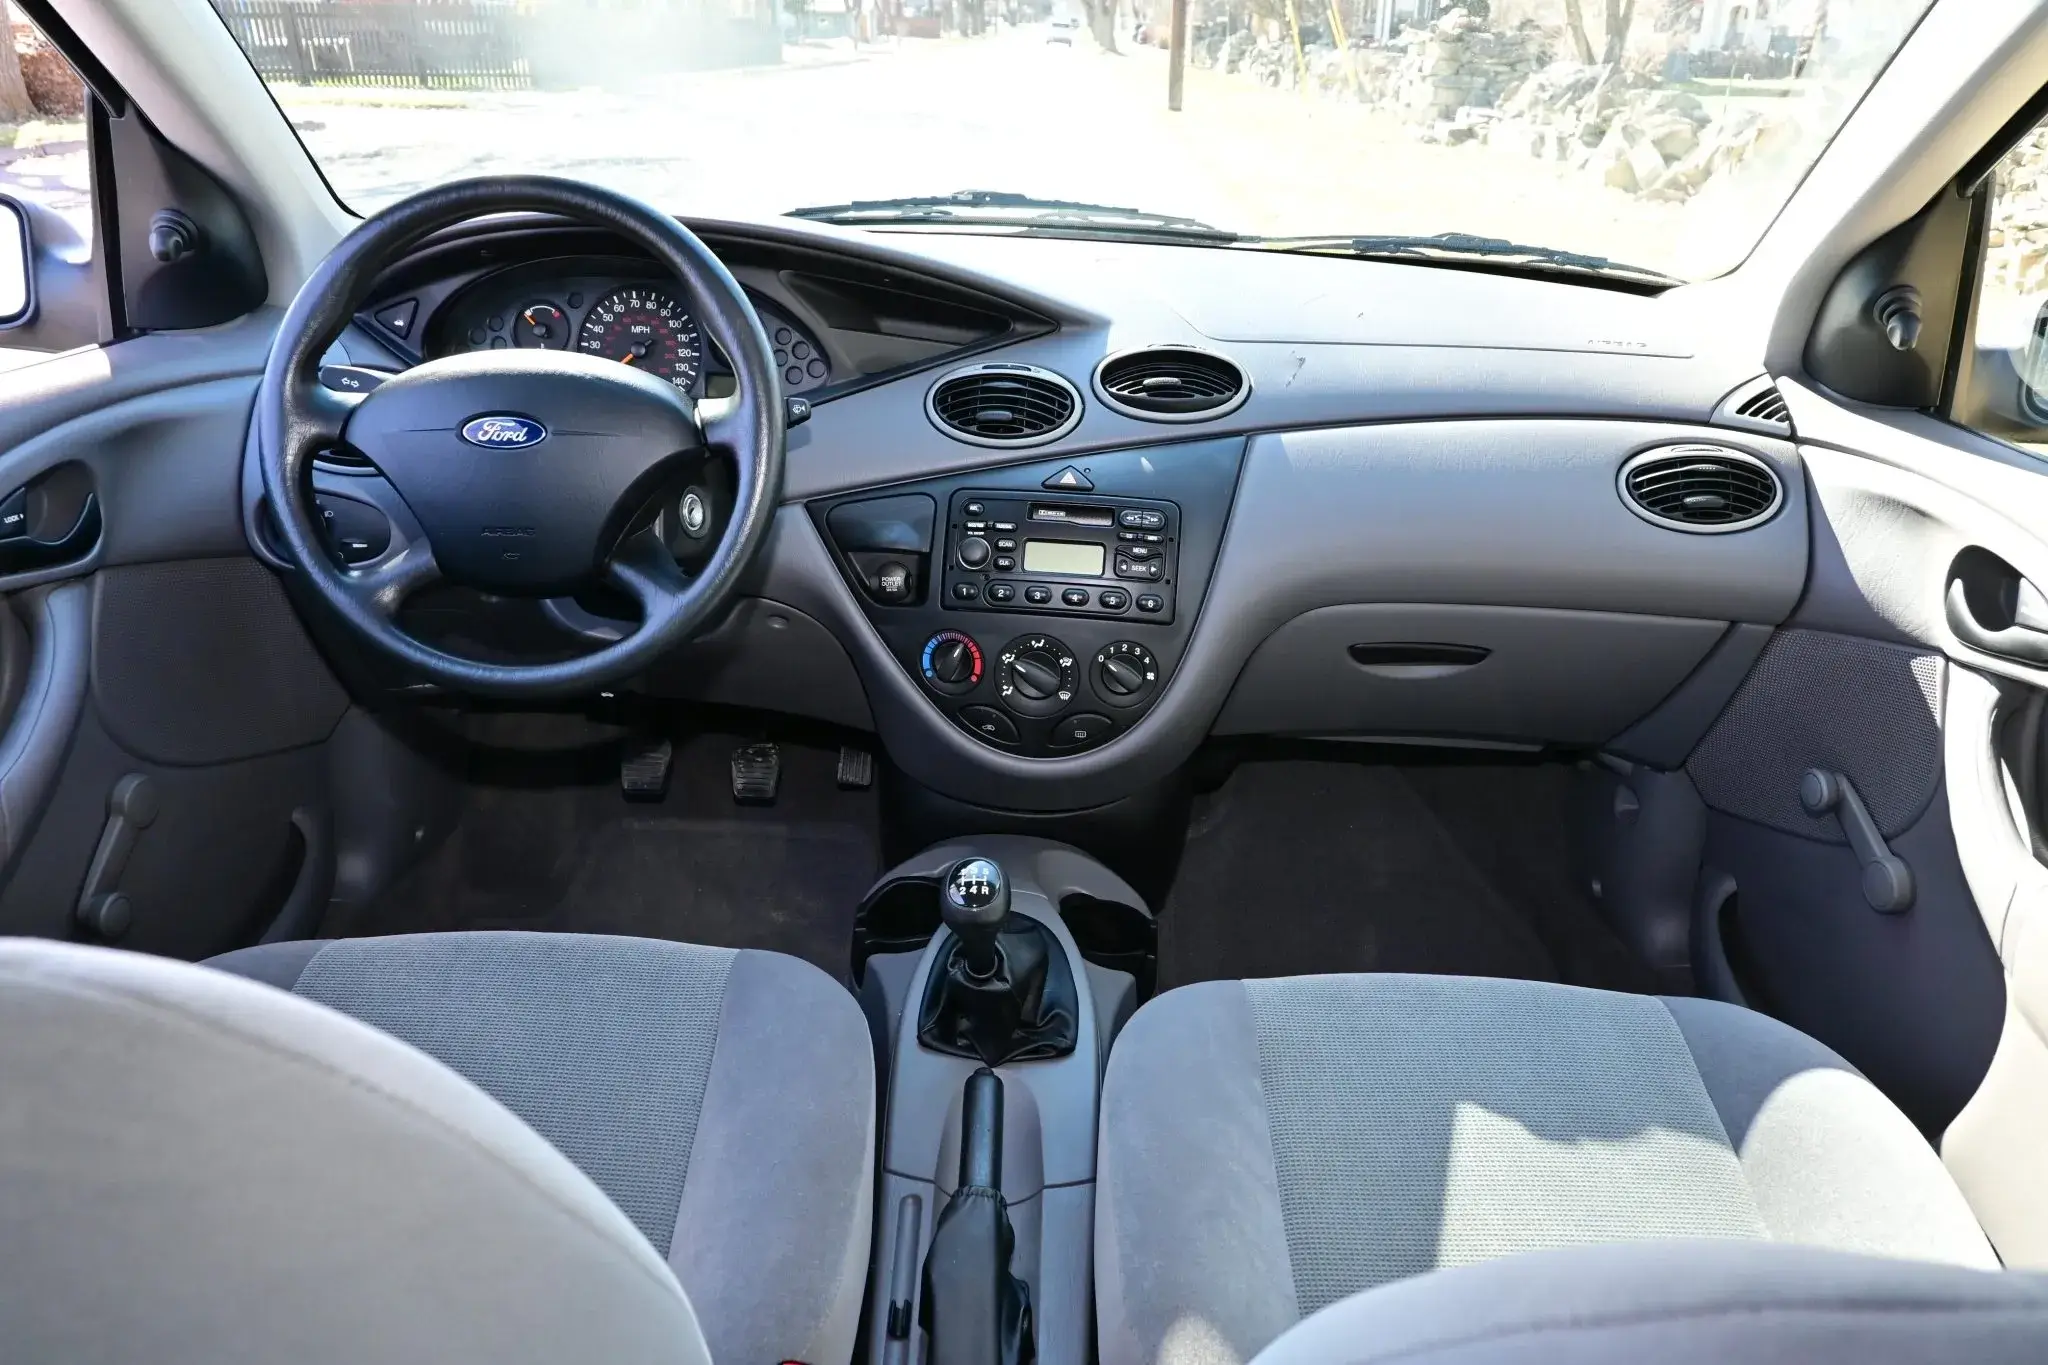 Ford Focus 2002 - interior